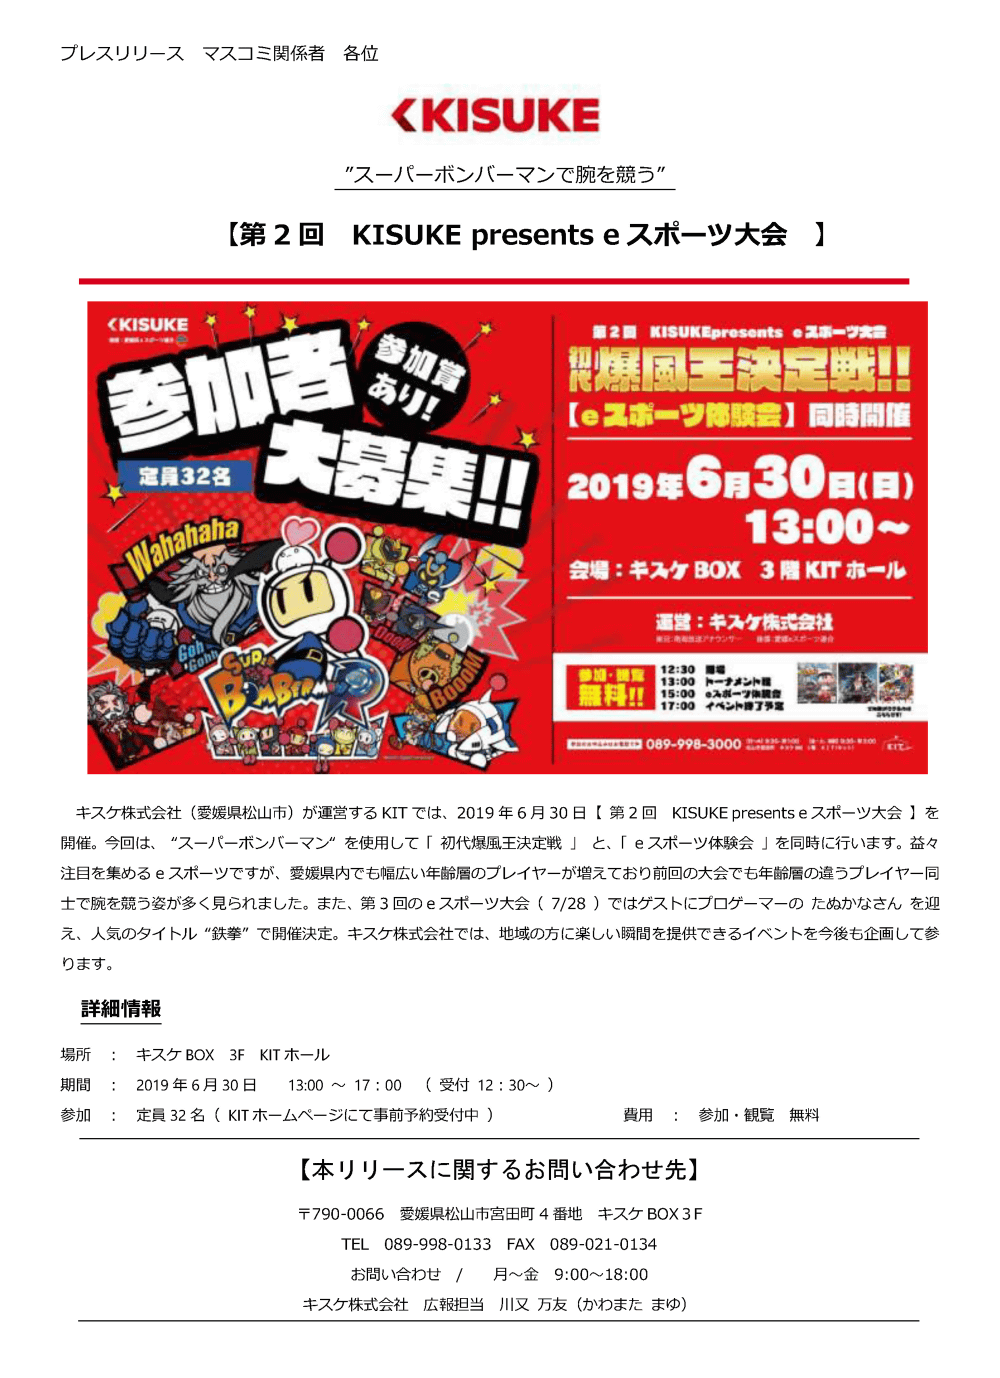 キスケ株式会社（愛媛県松山市）が運営するKITでは、2019年6月30日「第2回 KISUKE presents eスポーツ大会」を開催。今回は、「スーパーボンバーマン」を使用して「初代爆風王決定戦」と、「eスポーツ体験会」を同時に行います。 益々注目を集めるeスポーツですが、愛媛県内でも幅広い年齢層のプレイヤーが増えており前回の大会でも年齢層の違うプレイヤー同士で腕を競う姿が多く見られました。 また、第3回のeスポーツ大会（7/28）ではゲストにプロゲーマーのたぬかなさんを迎え、人気のタイトル“鉄拳”で開催決定。キスケ株式会社では、地域の方に楽しい瞬間を提供できるイベントを今後も企画して参ります。